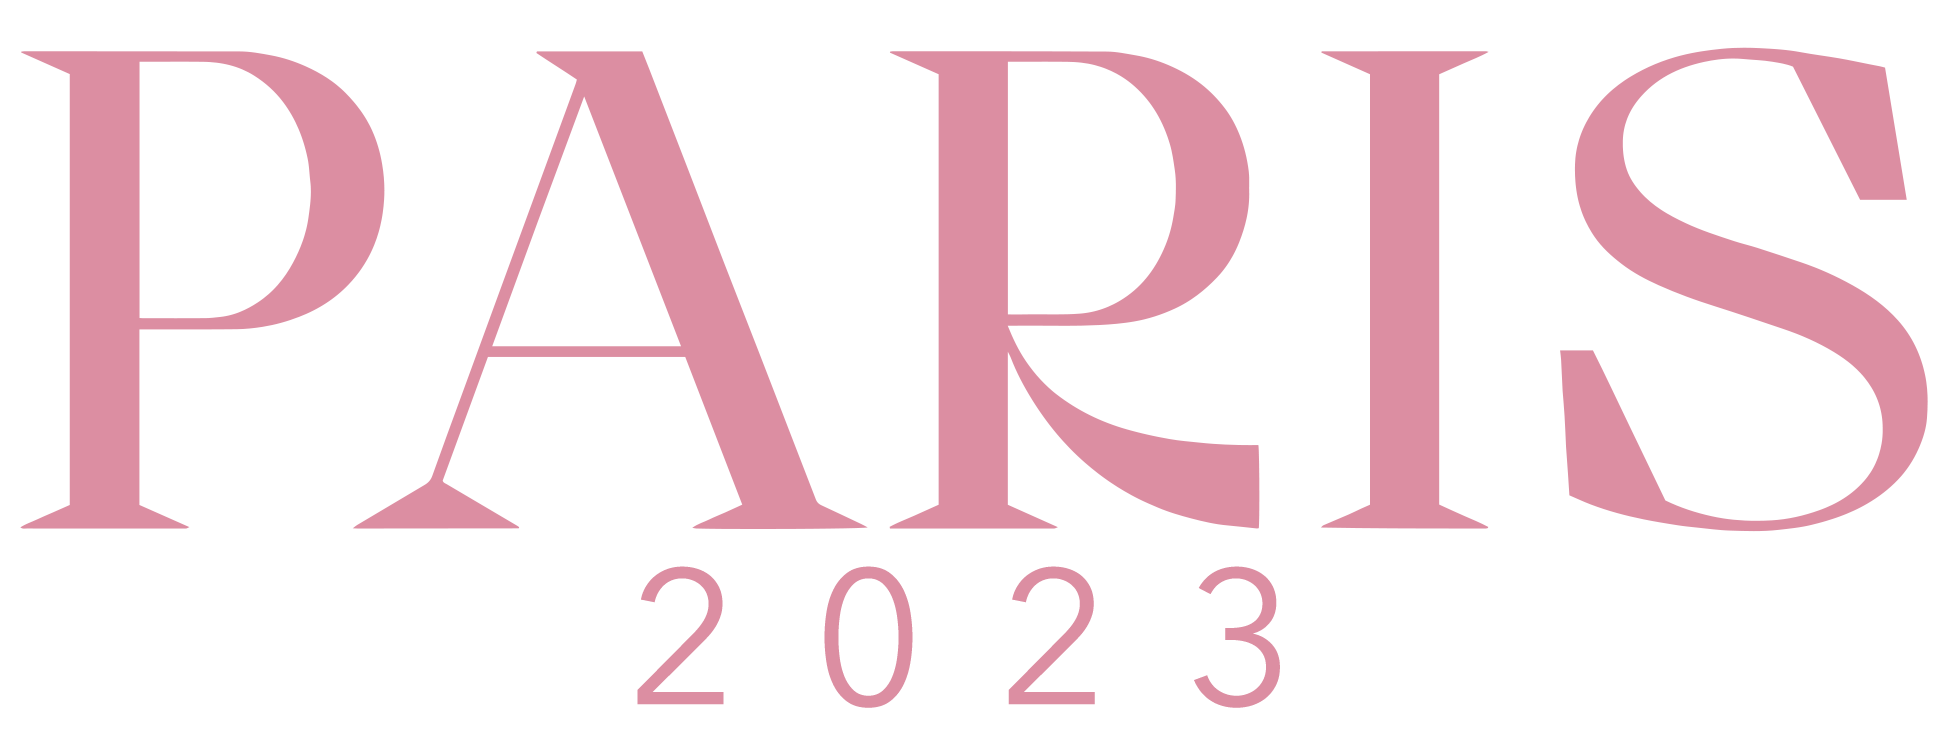 Paris 2022 recap